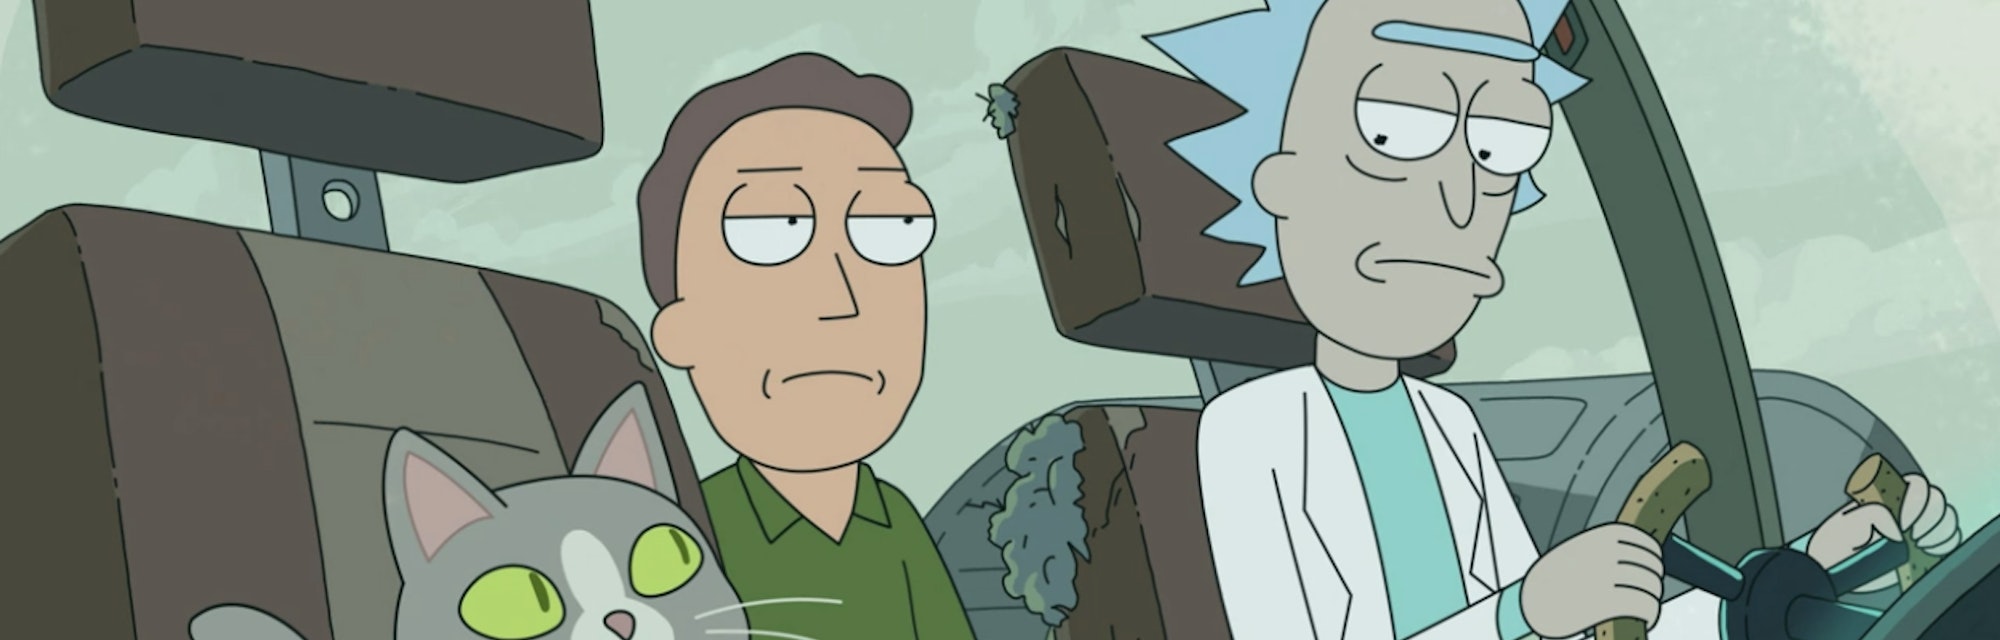 Reddit Rick And Morty Season 4 Episode 1 Link